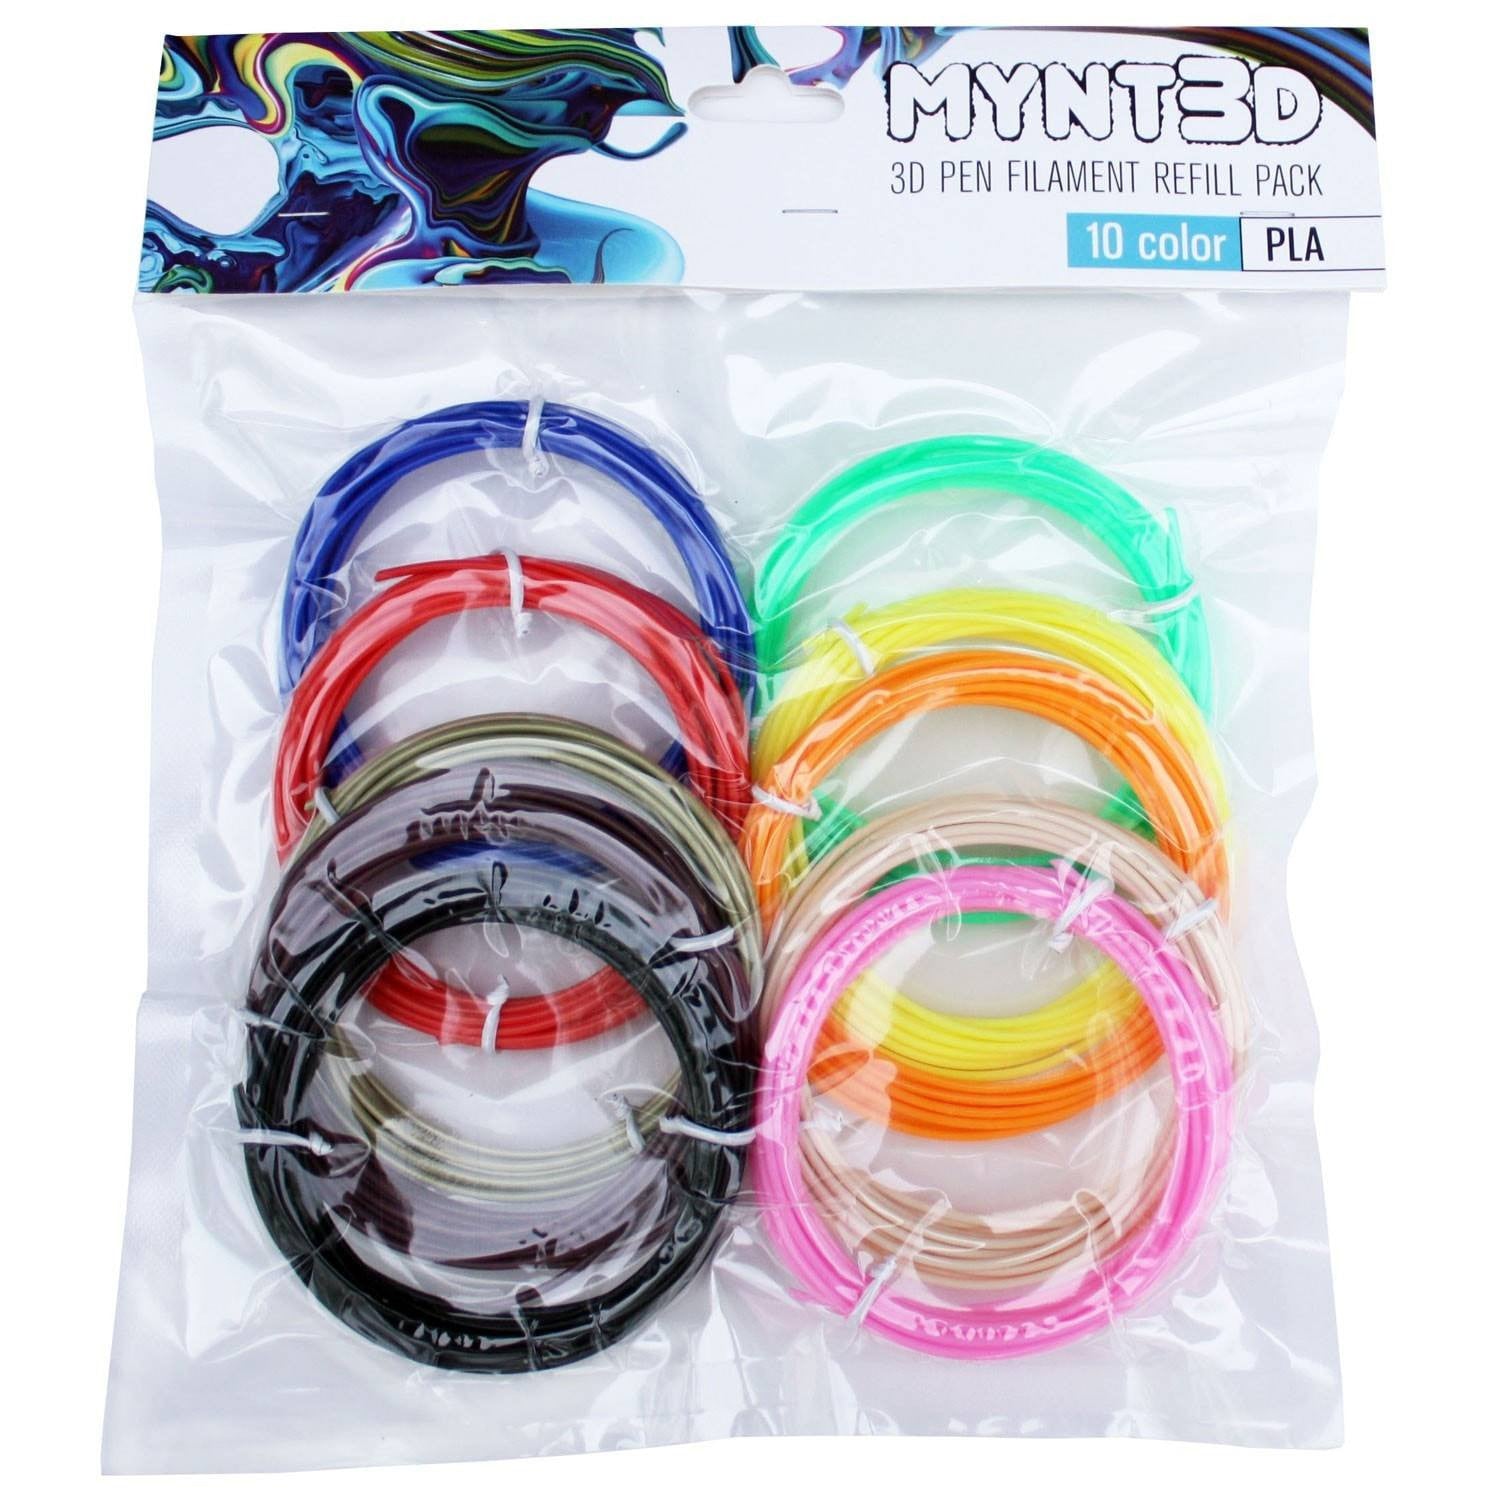 PLA Filament Refill Pack (10 color, 3m Each)